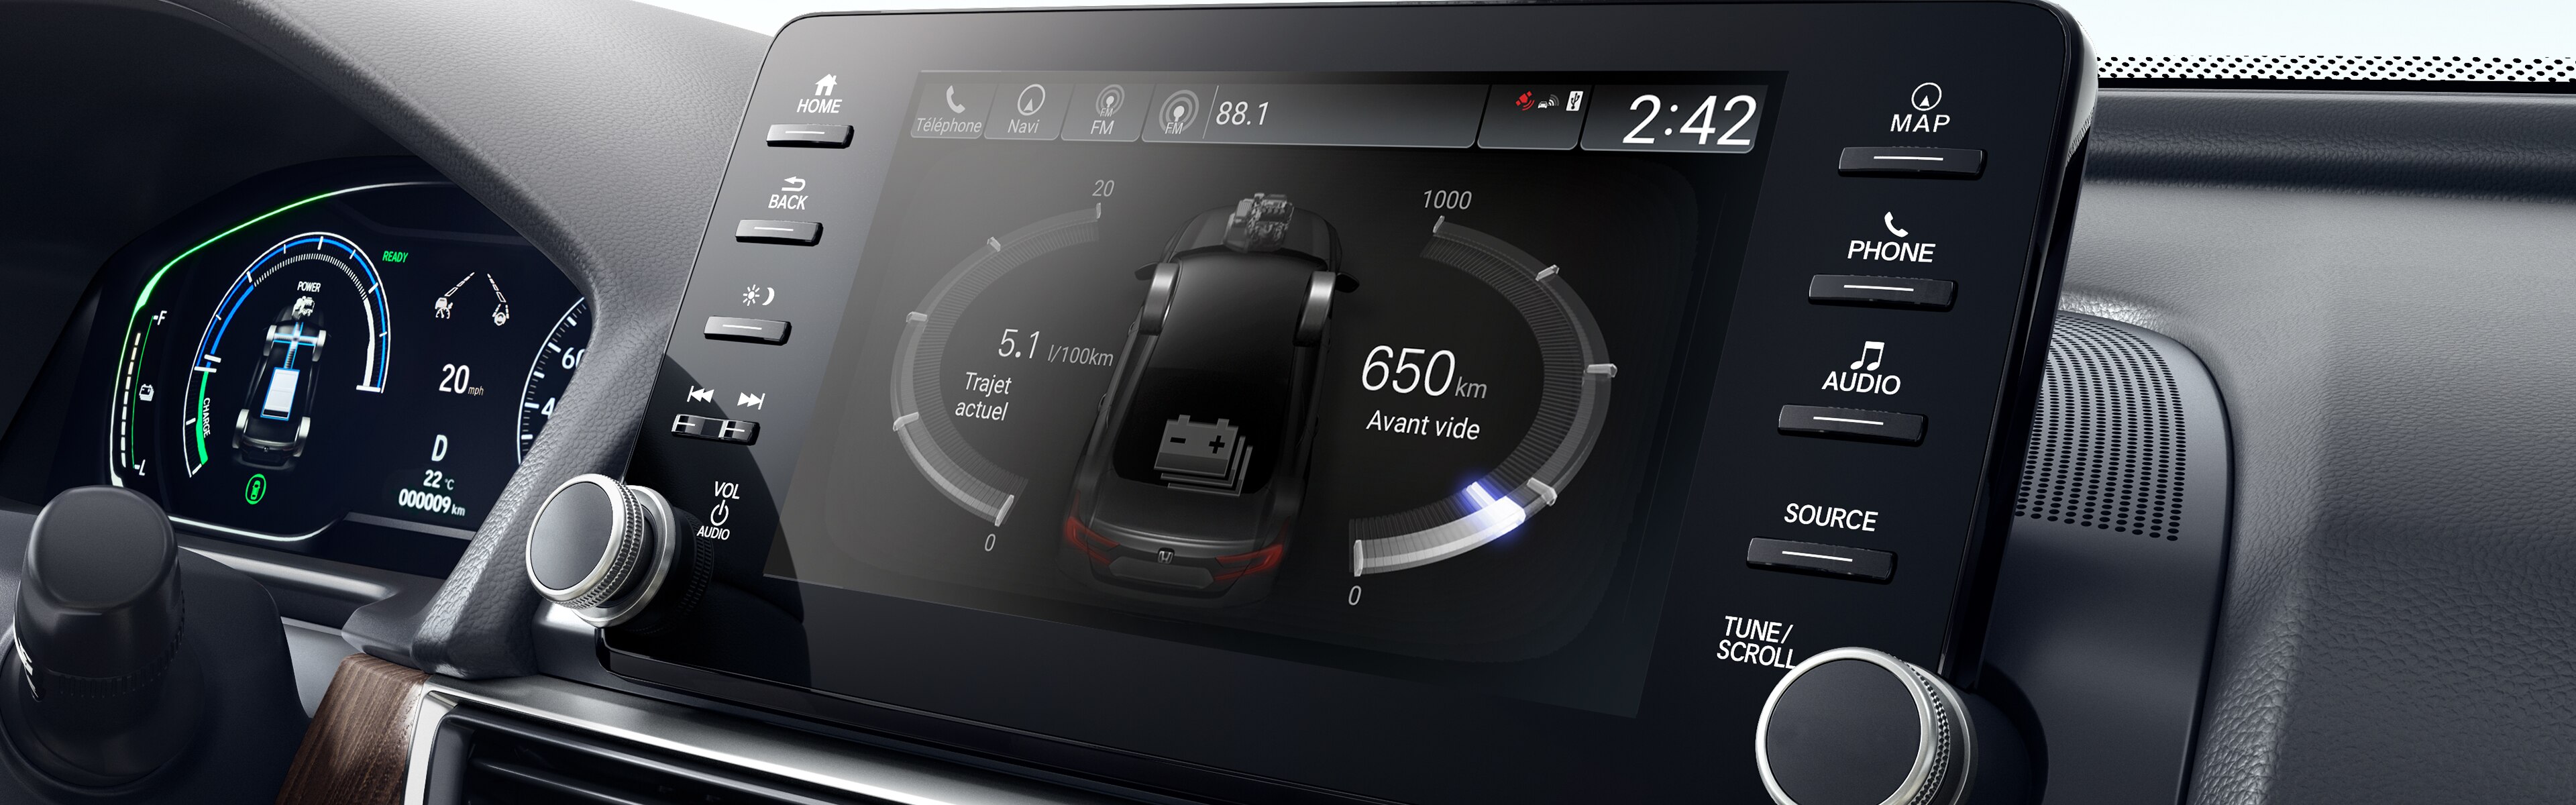 Image de l’écran d’affichage de l’Accord Hybrid 2018